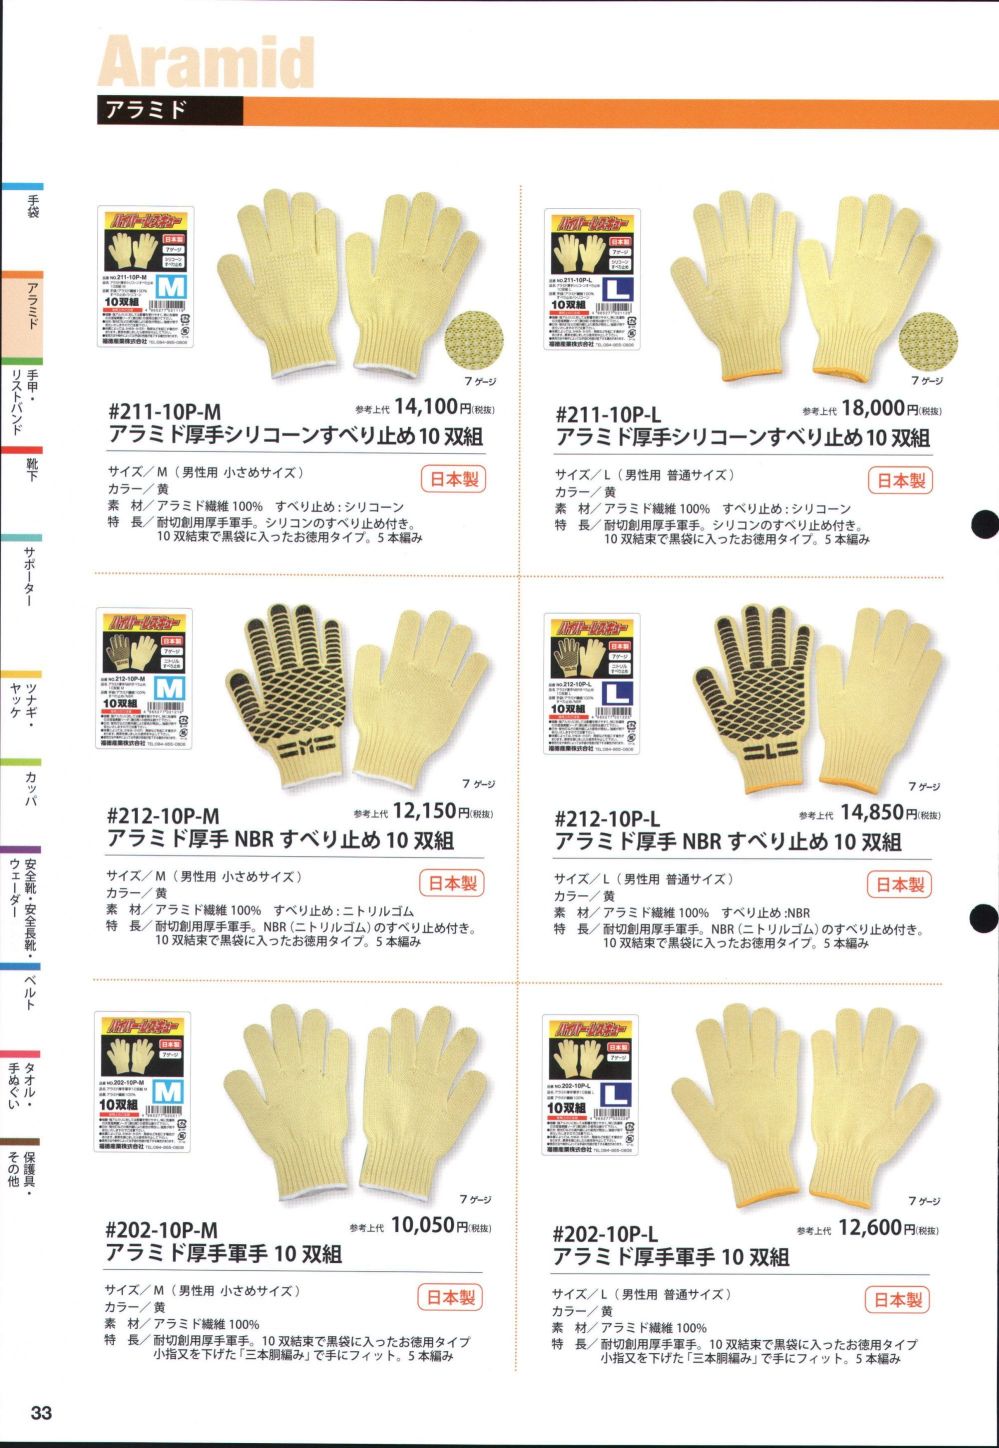 ユニフォーム1 福徳産業の手袋 202-10P